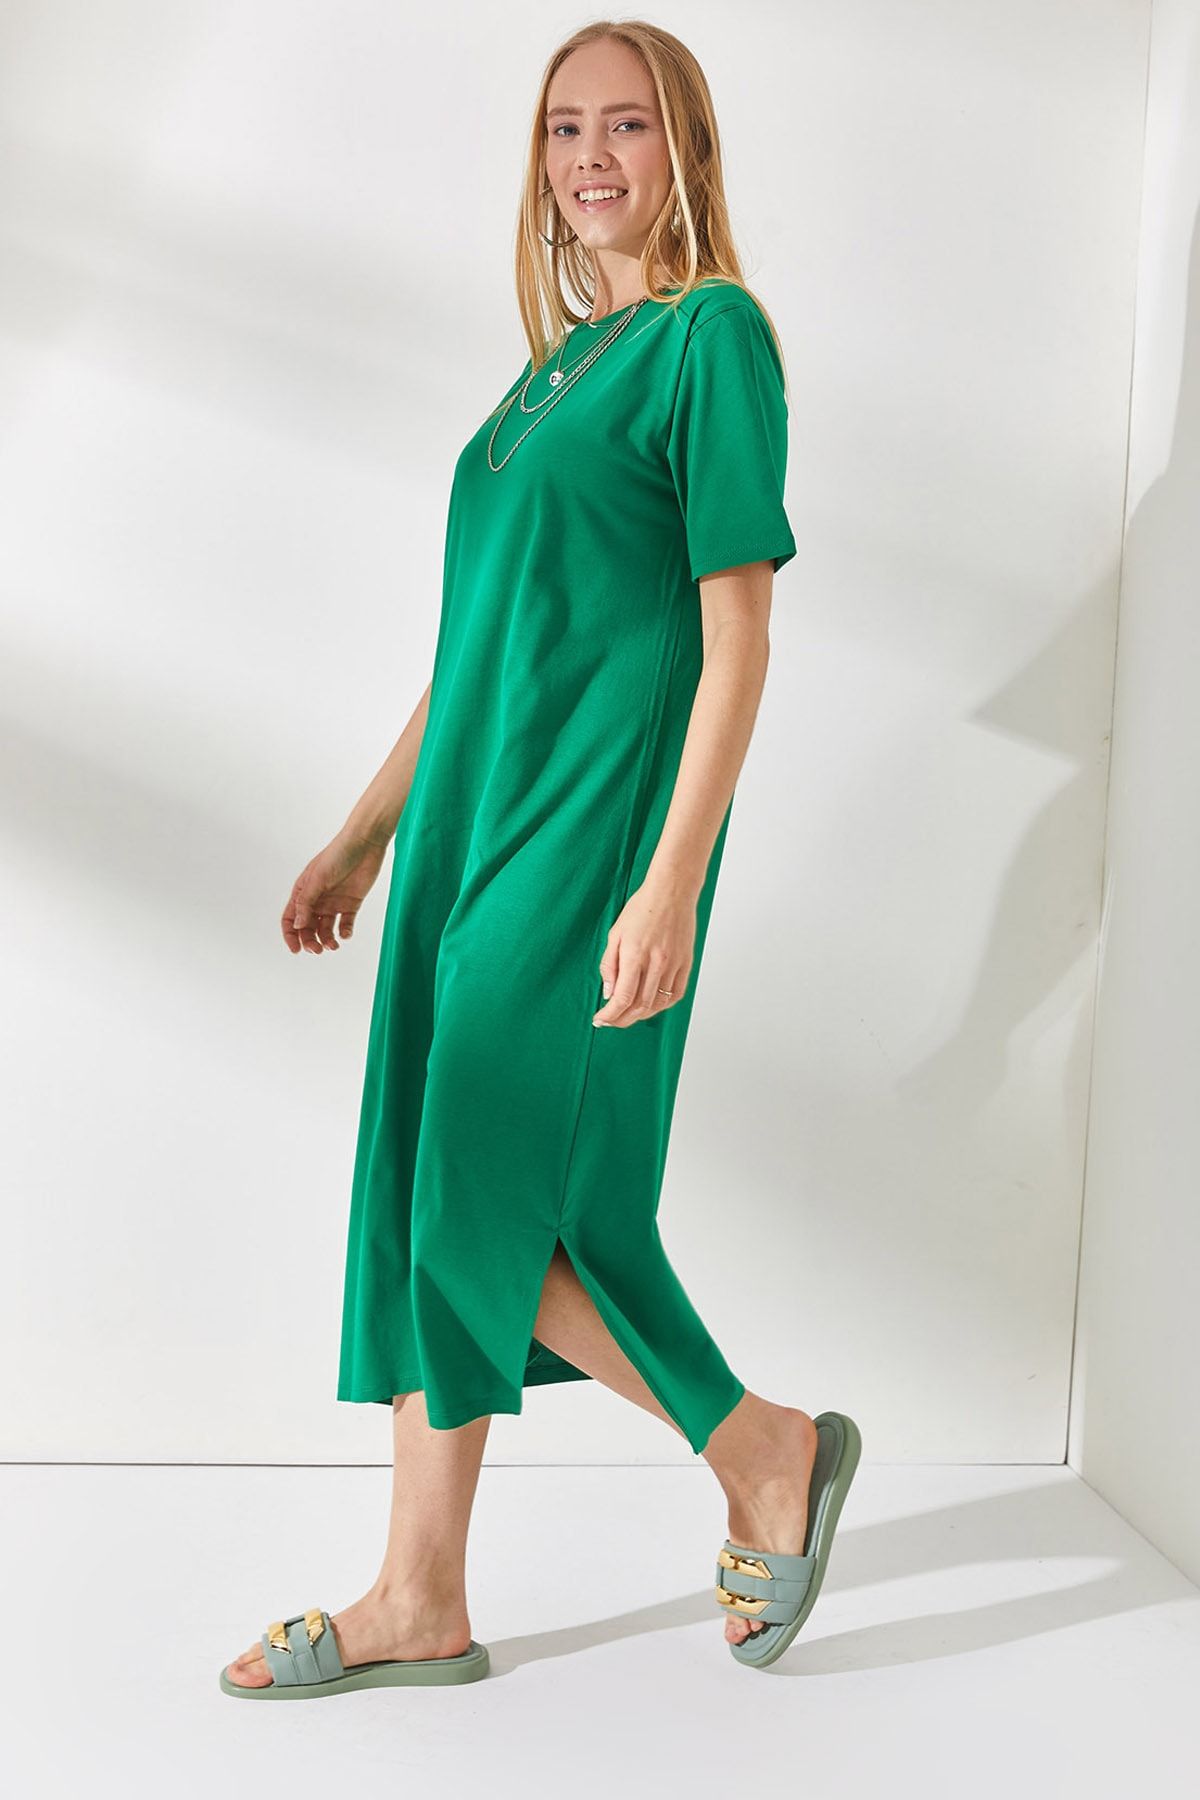 Olalook Kadın Çimen Yeşili Yanı Yırtmaçlı Oversize Pamuk Elbise  ELB-19001880